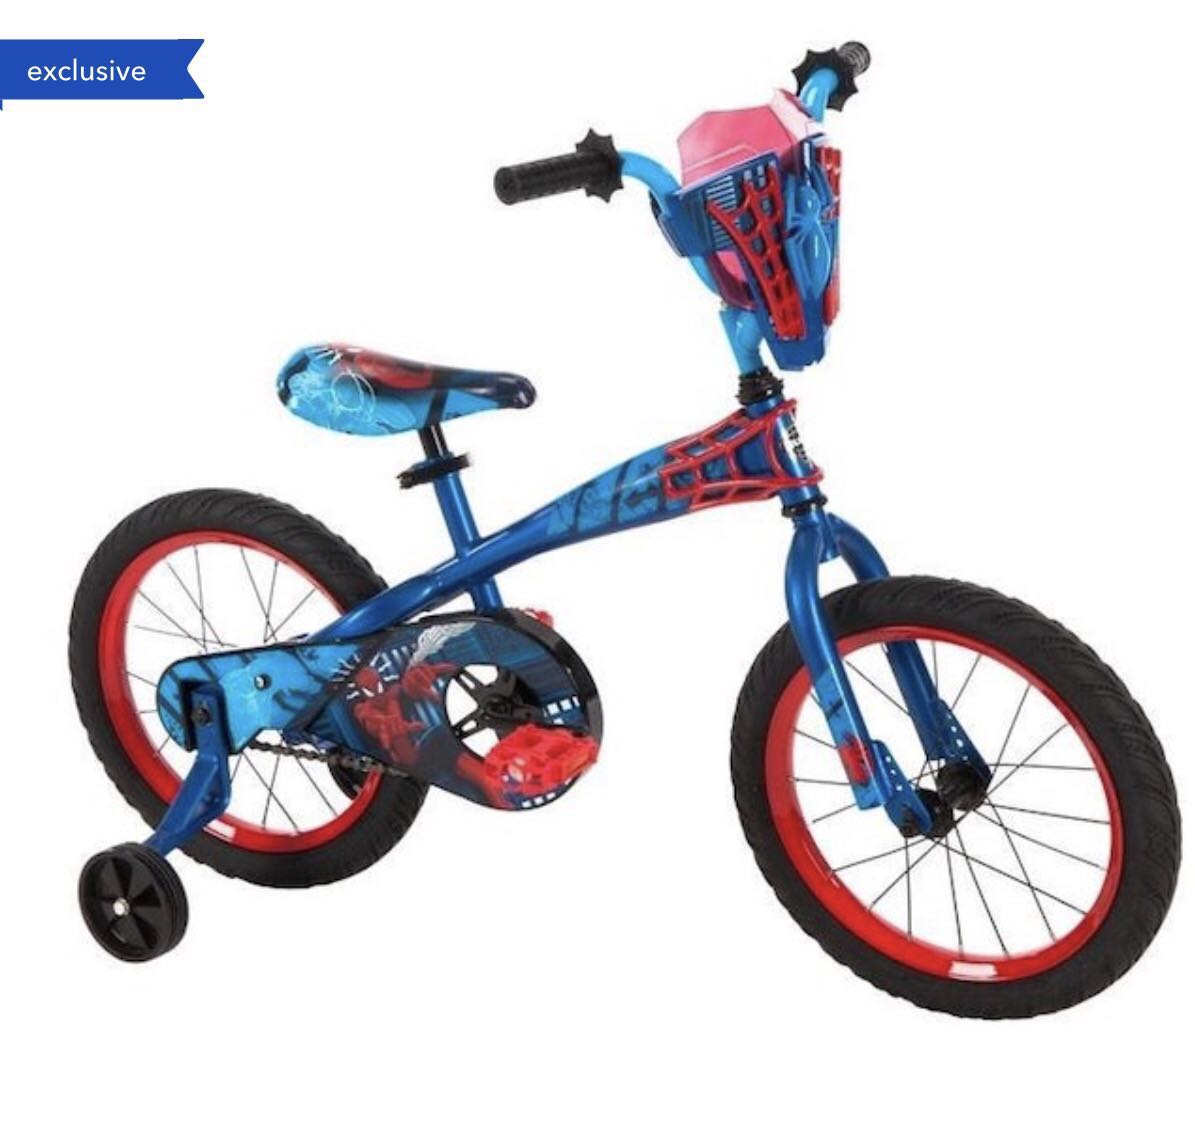 huffy spiderman bike